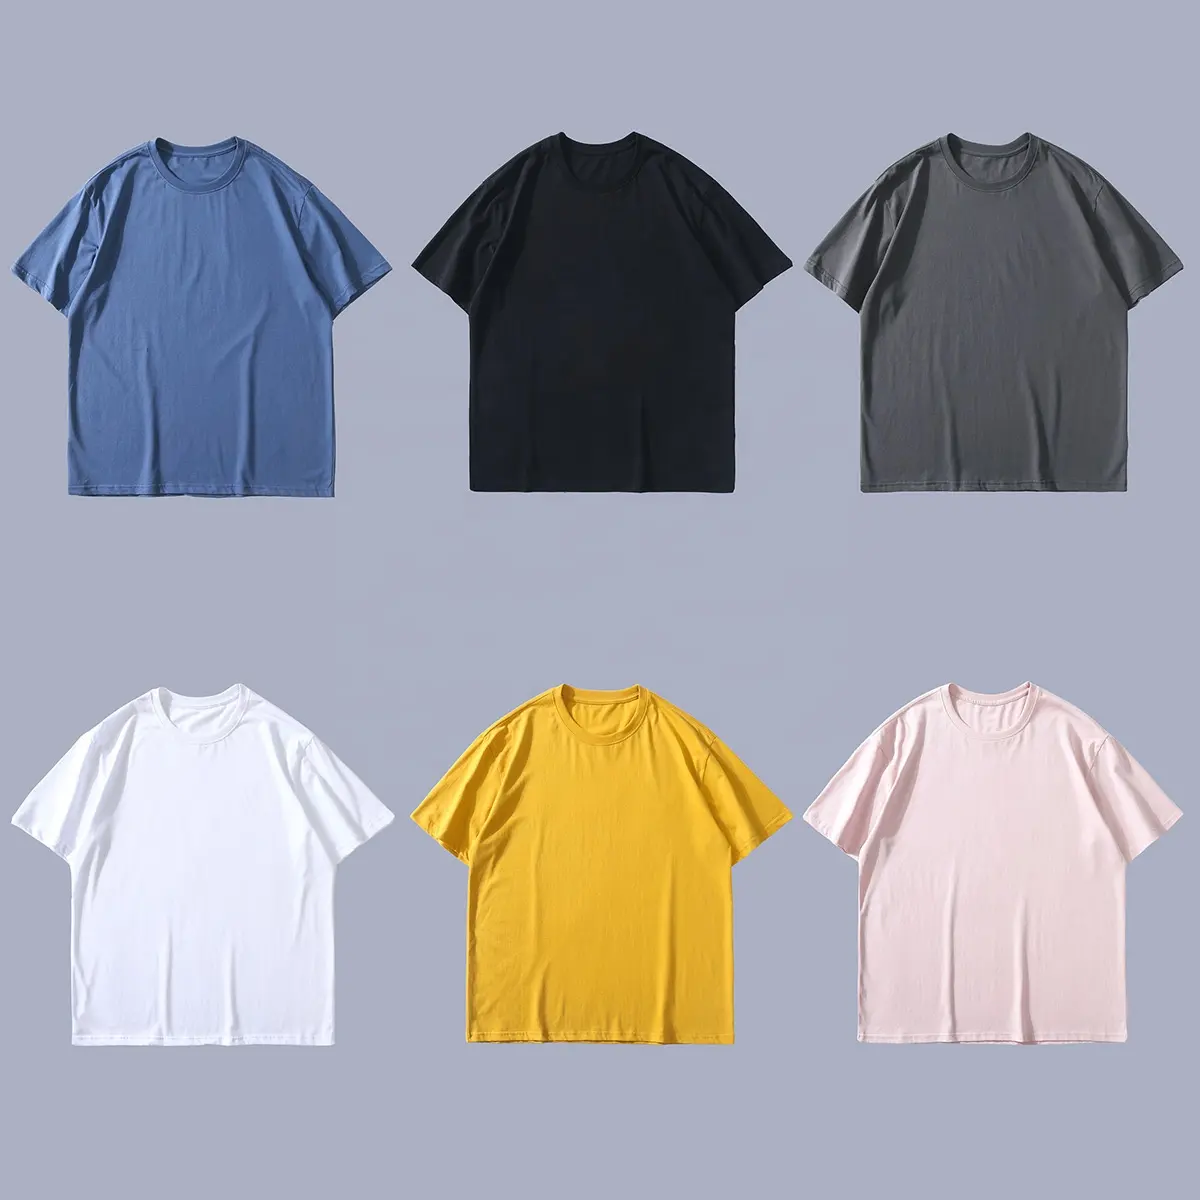 L2 Wholesale High Quality Mens Blank Camisas 100% Cotton Tshirt Printing Custom Plain T-shirt Logo Printed Black T Shirts